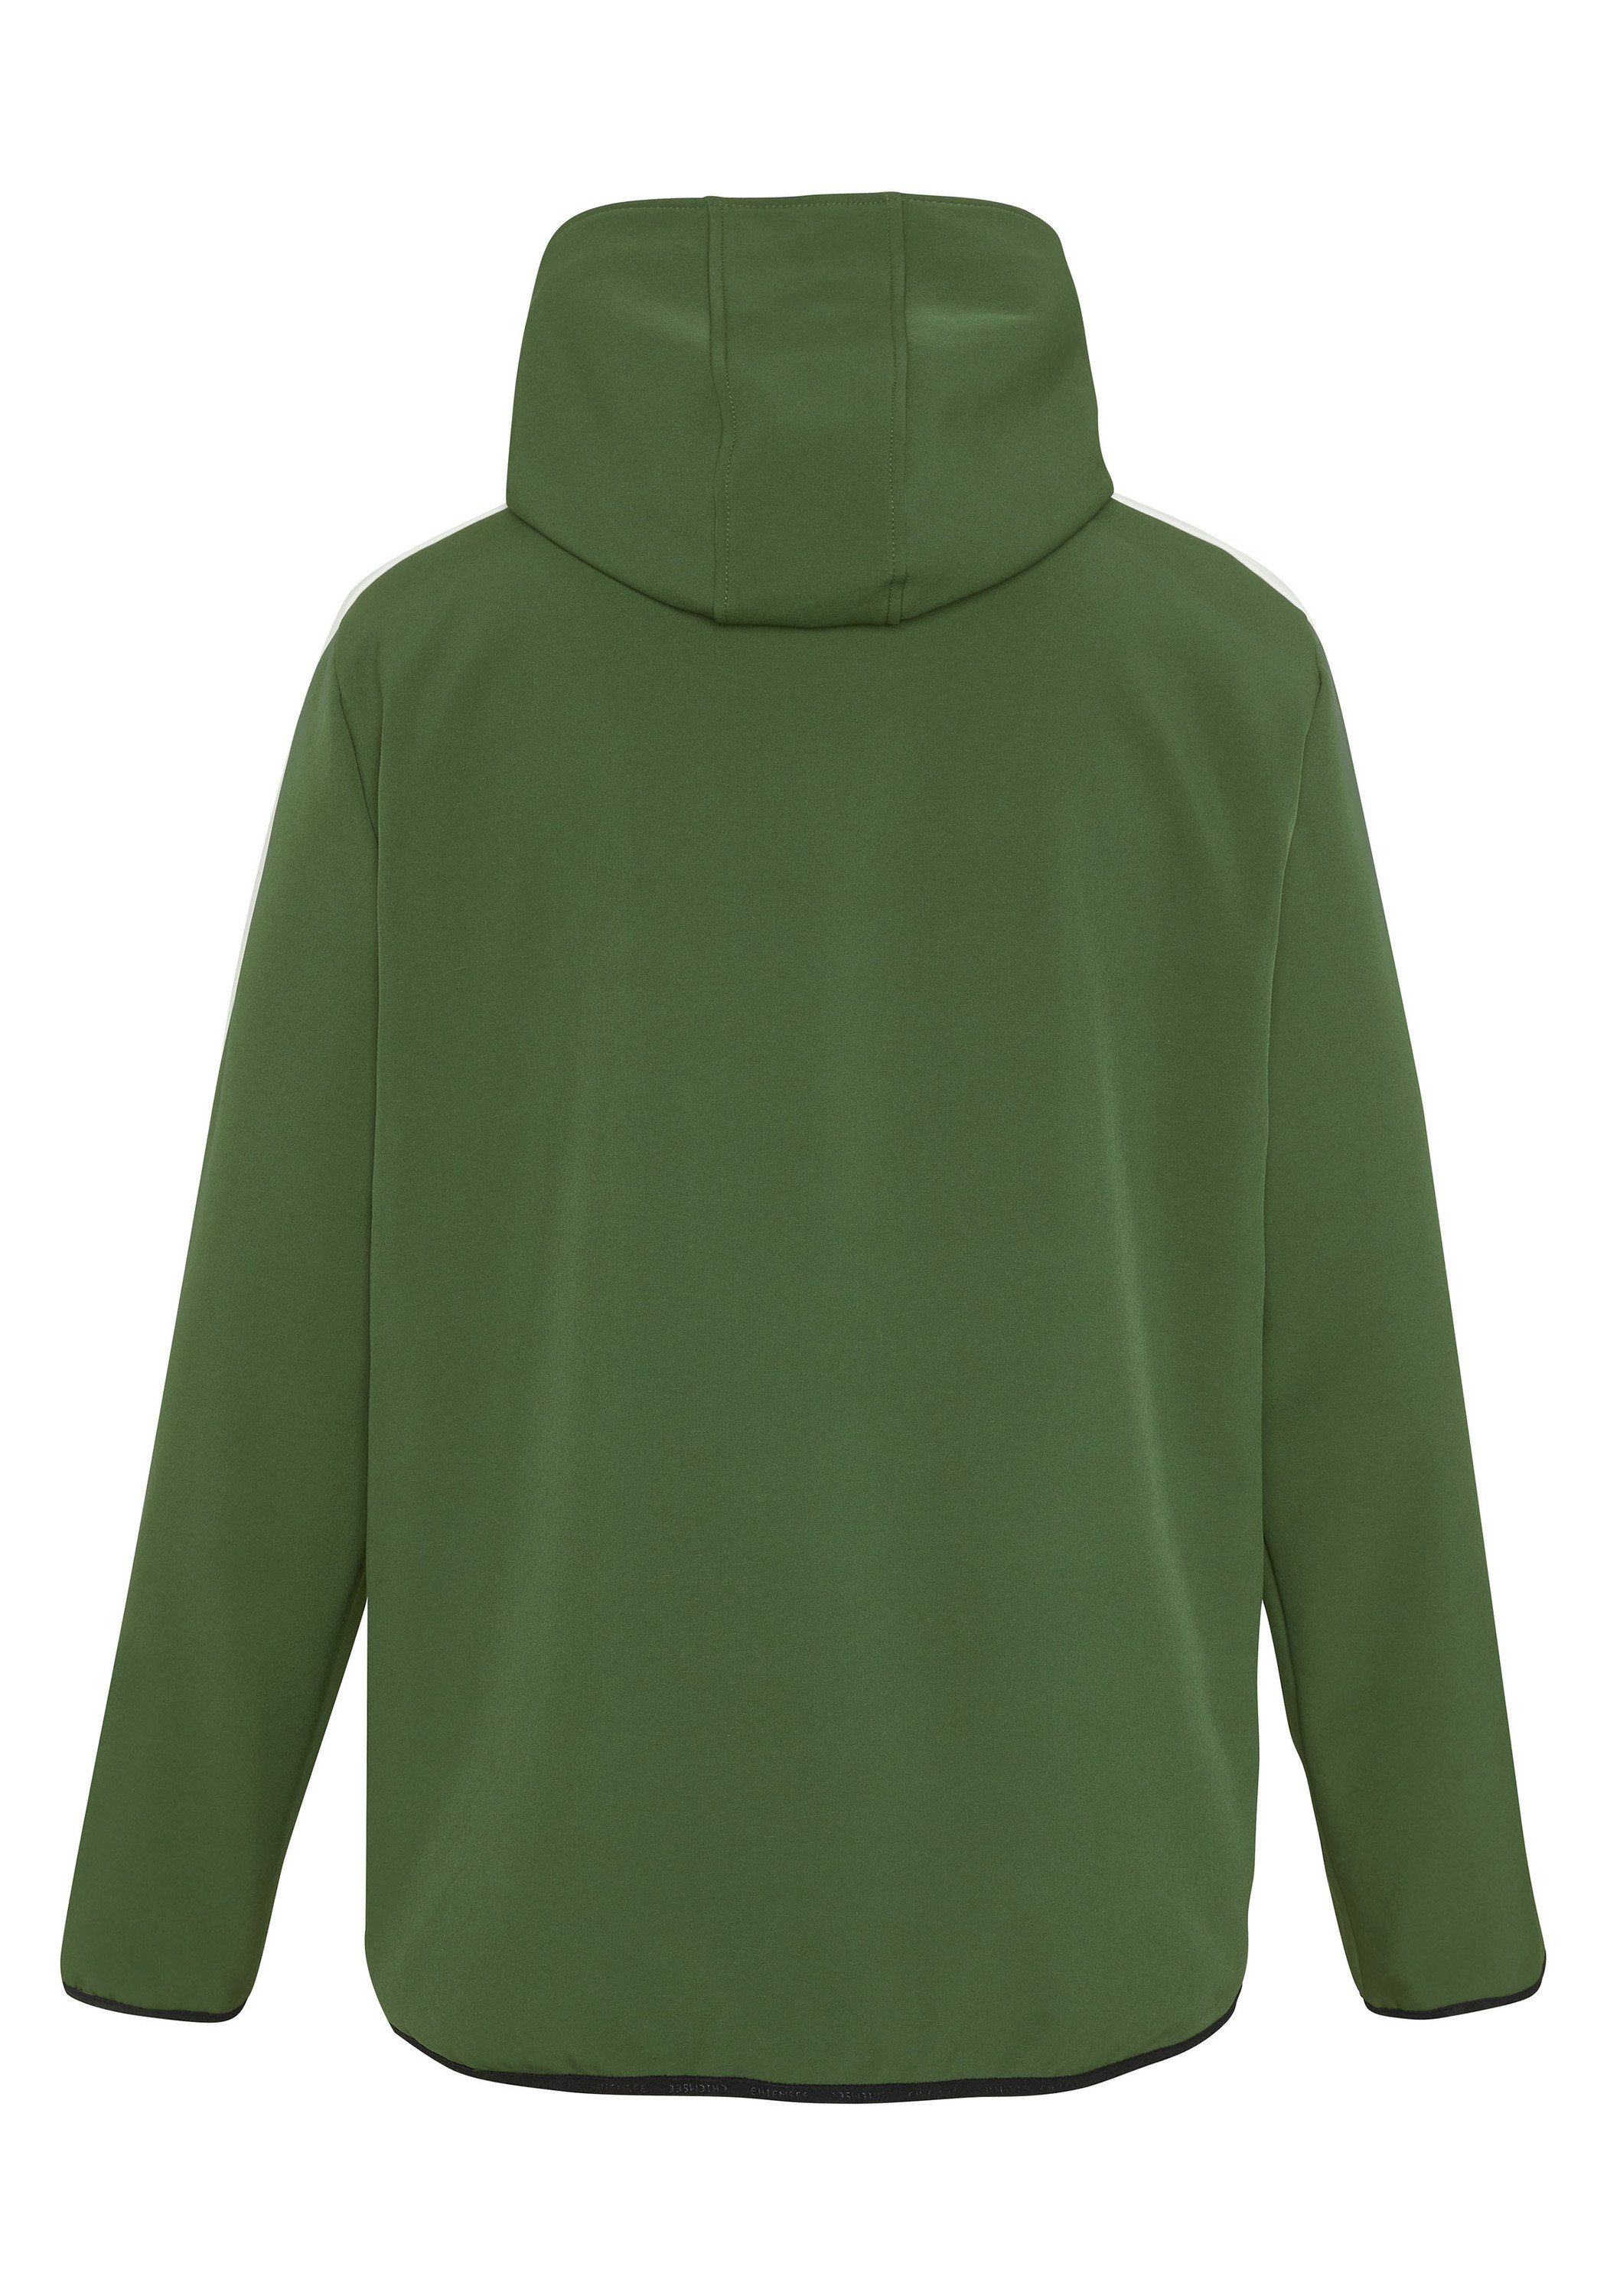 Chiemsee Softshelljacke Softshell-Jacke mit Green Blockstreifen und Kombu Retro-Patch 19-0417